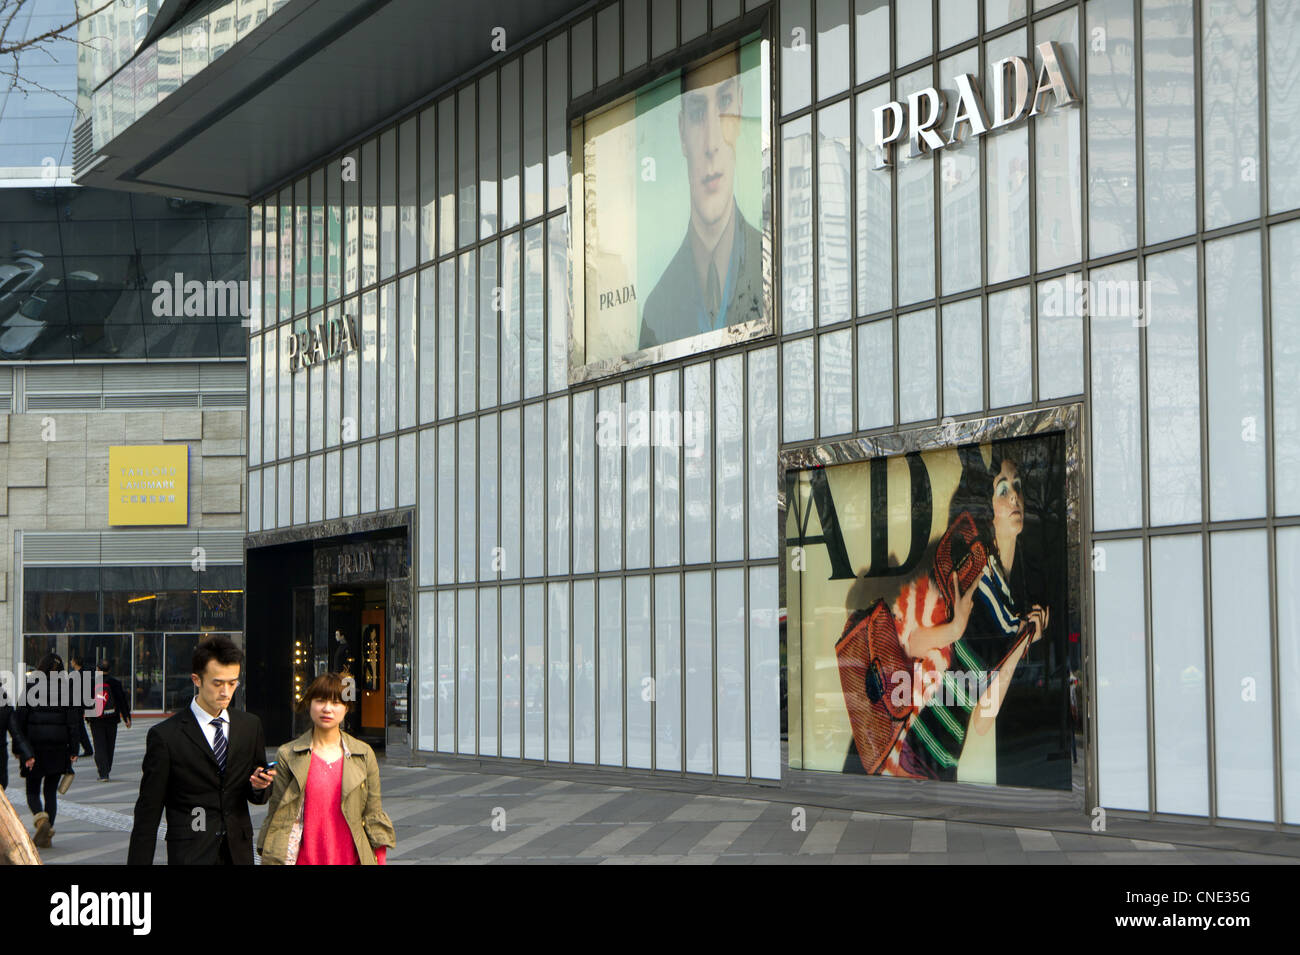 Prada shop in Chengdu, China Stock Photo